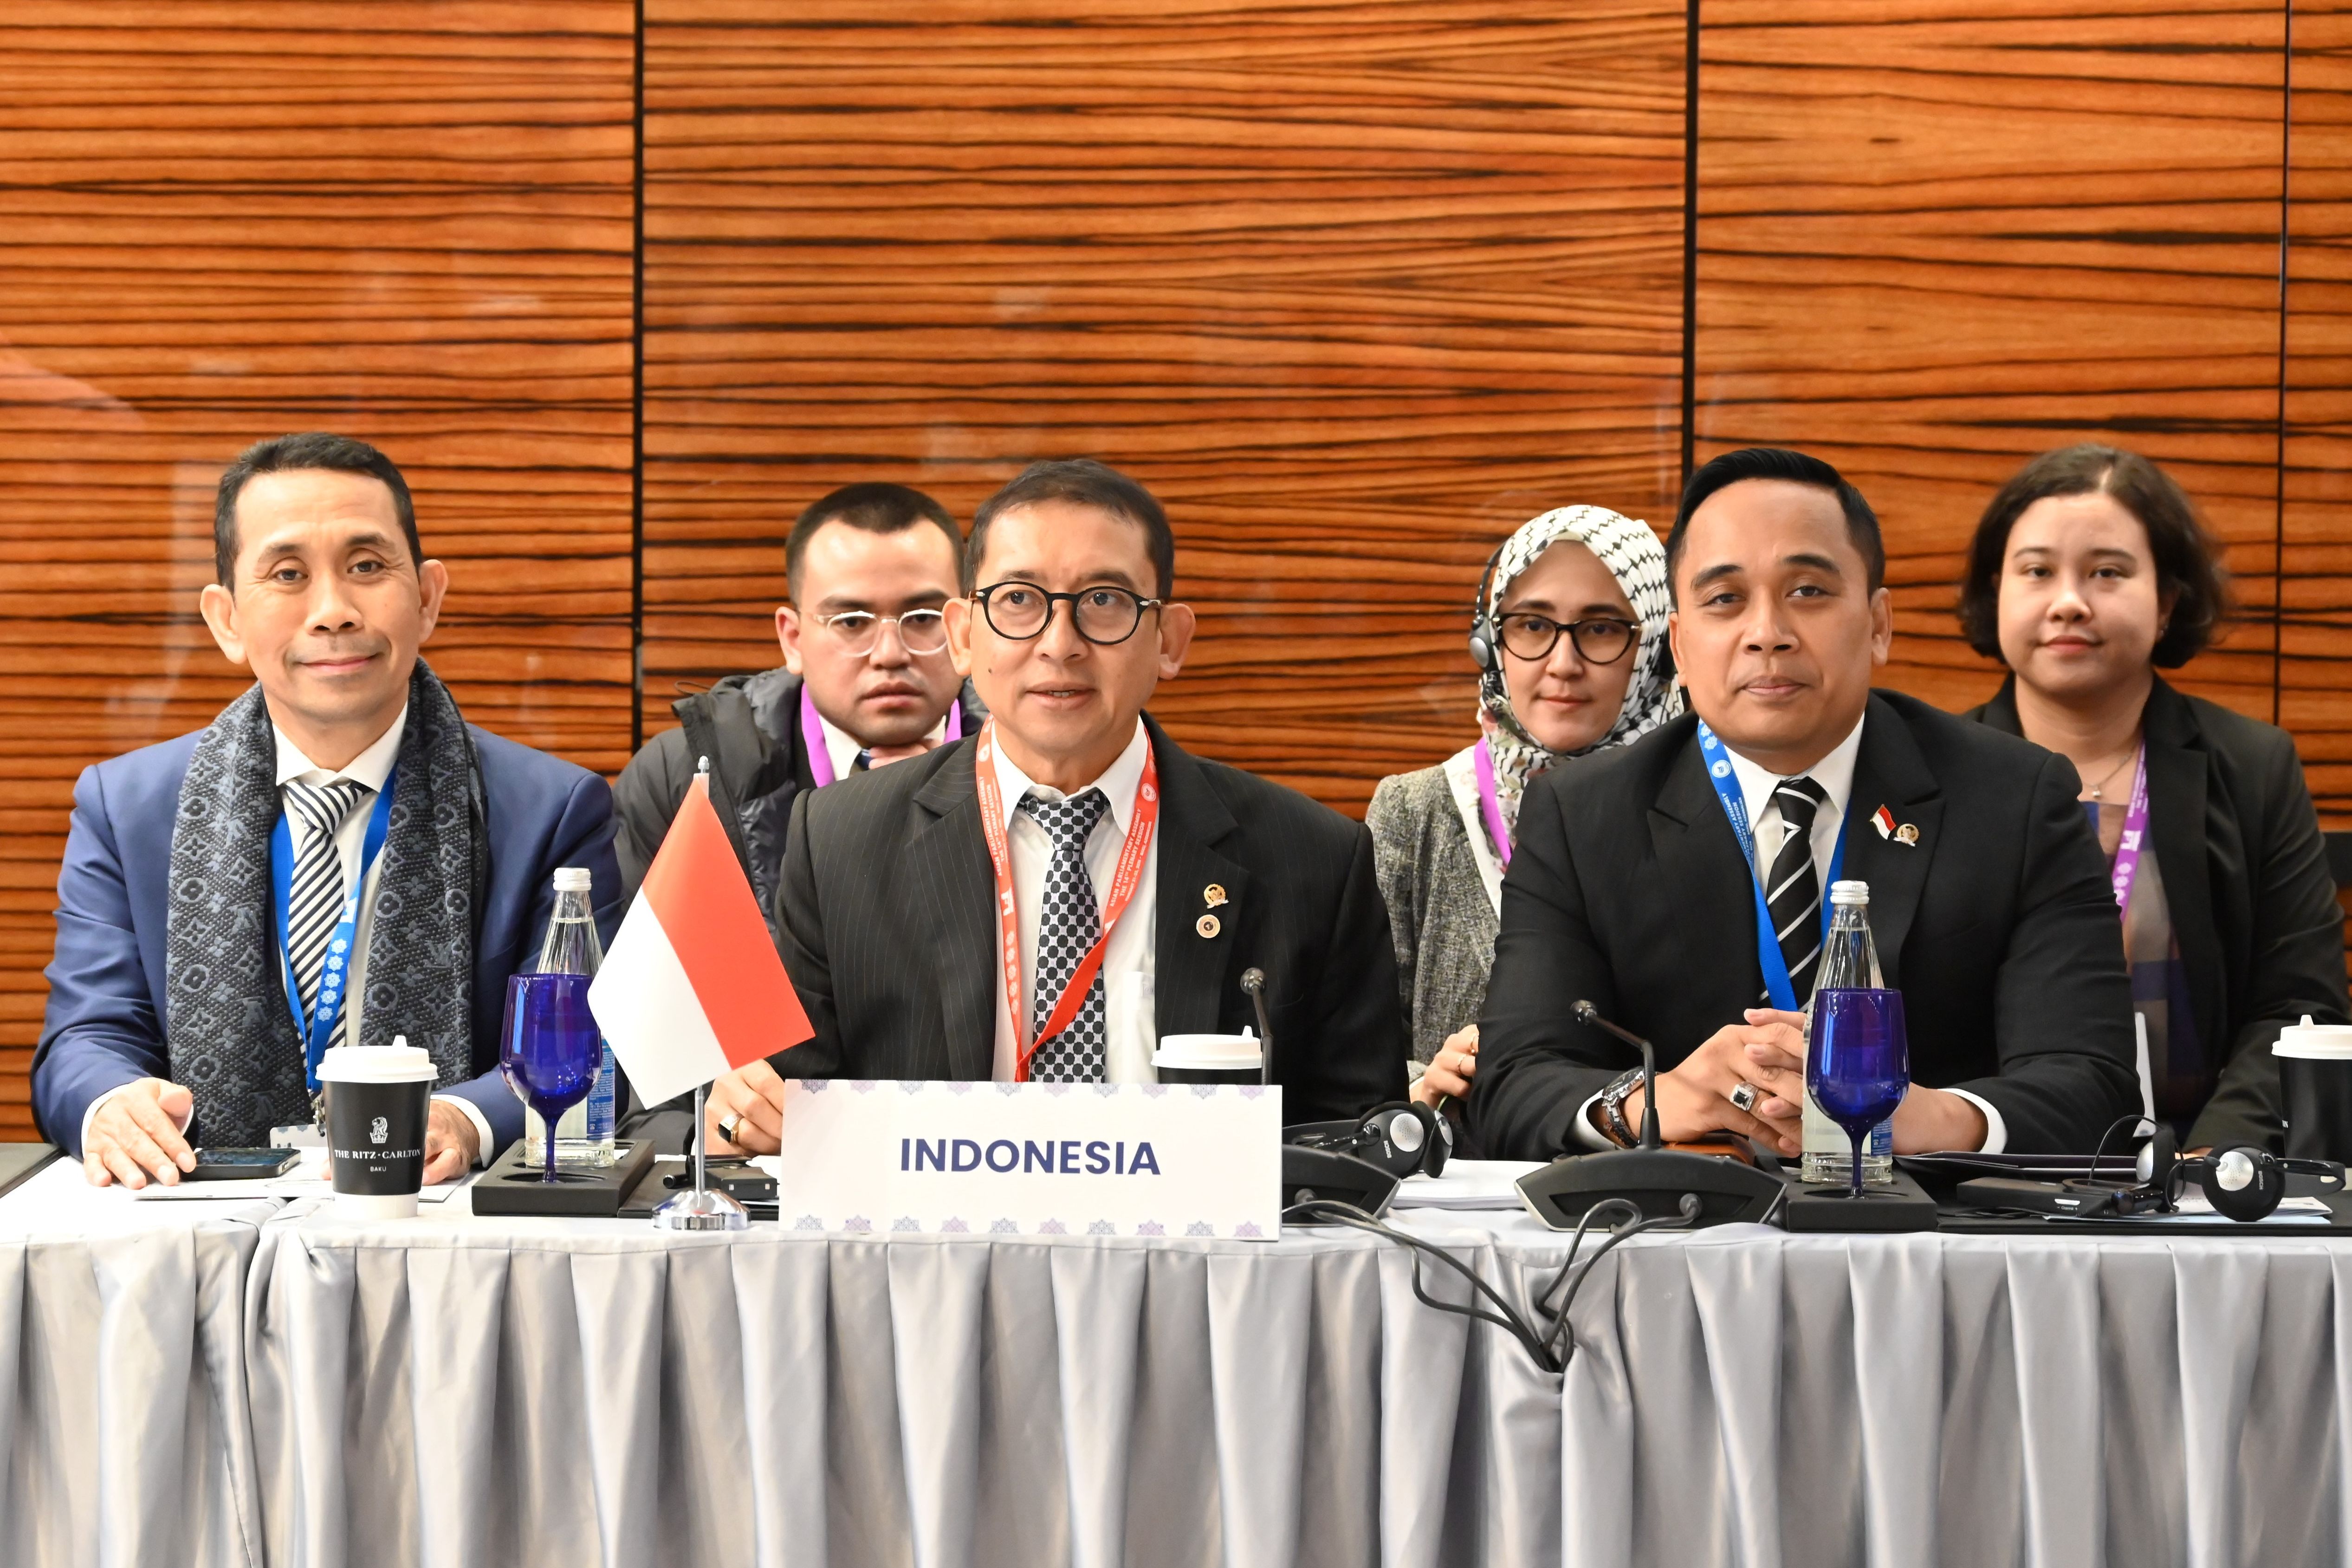 Hadiri Forum APA Azerbaijan, Fadli Zon: Indonesia Dukung Kemerdekaan Palestina